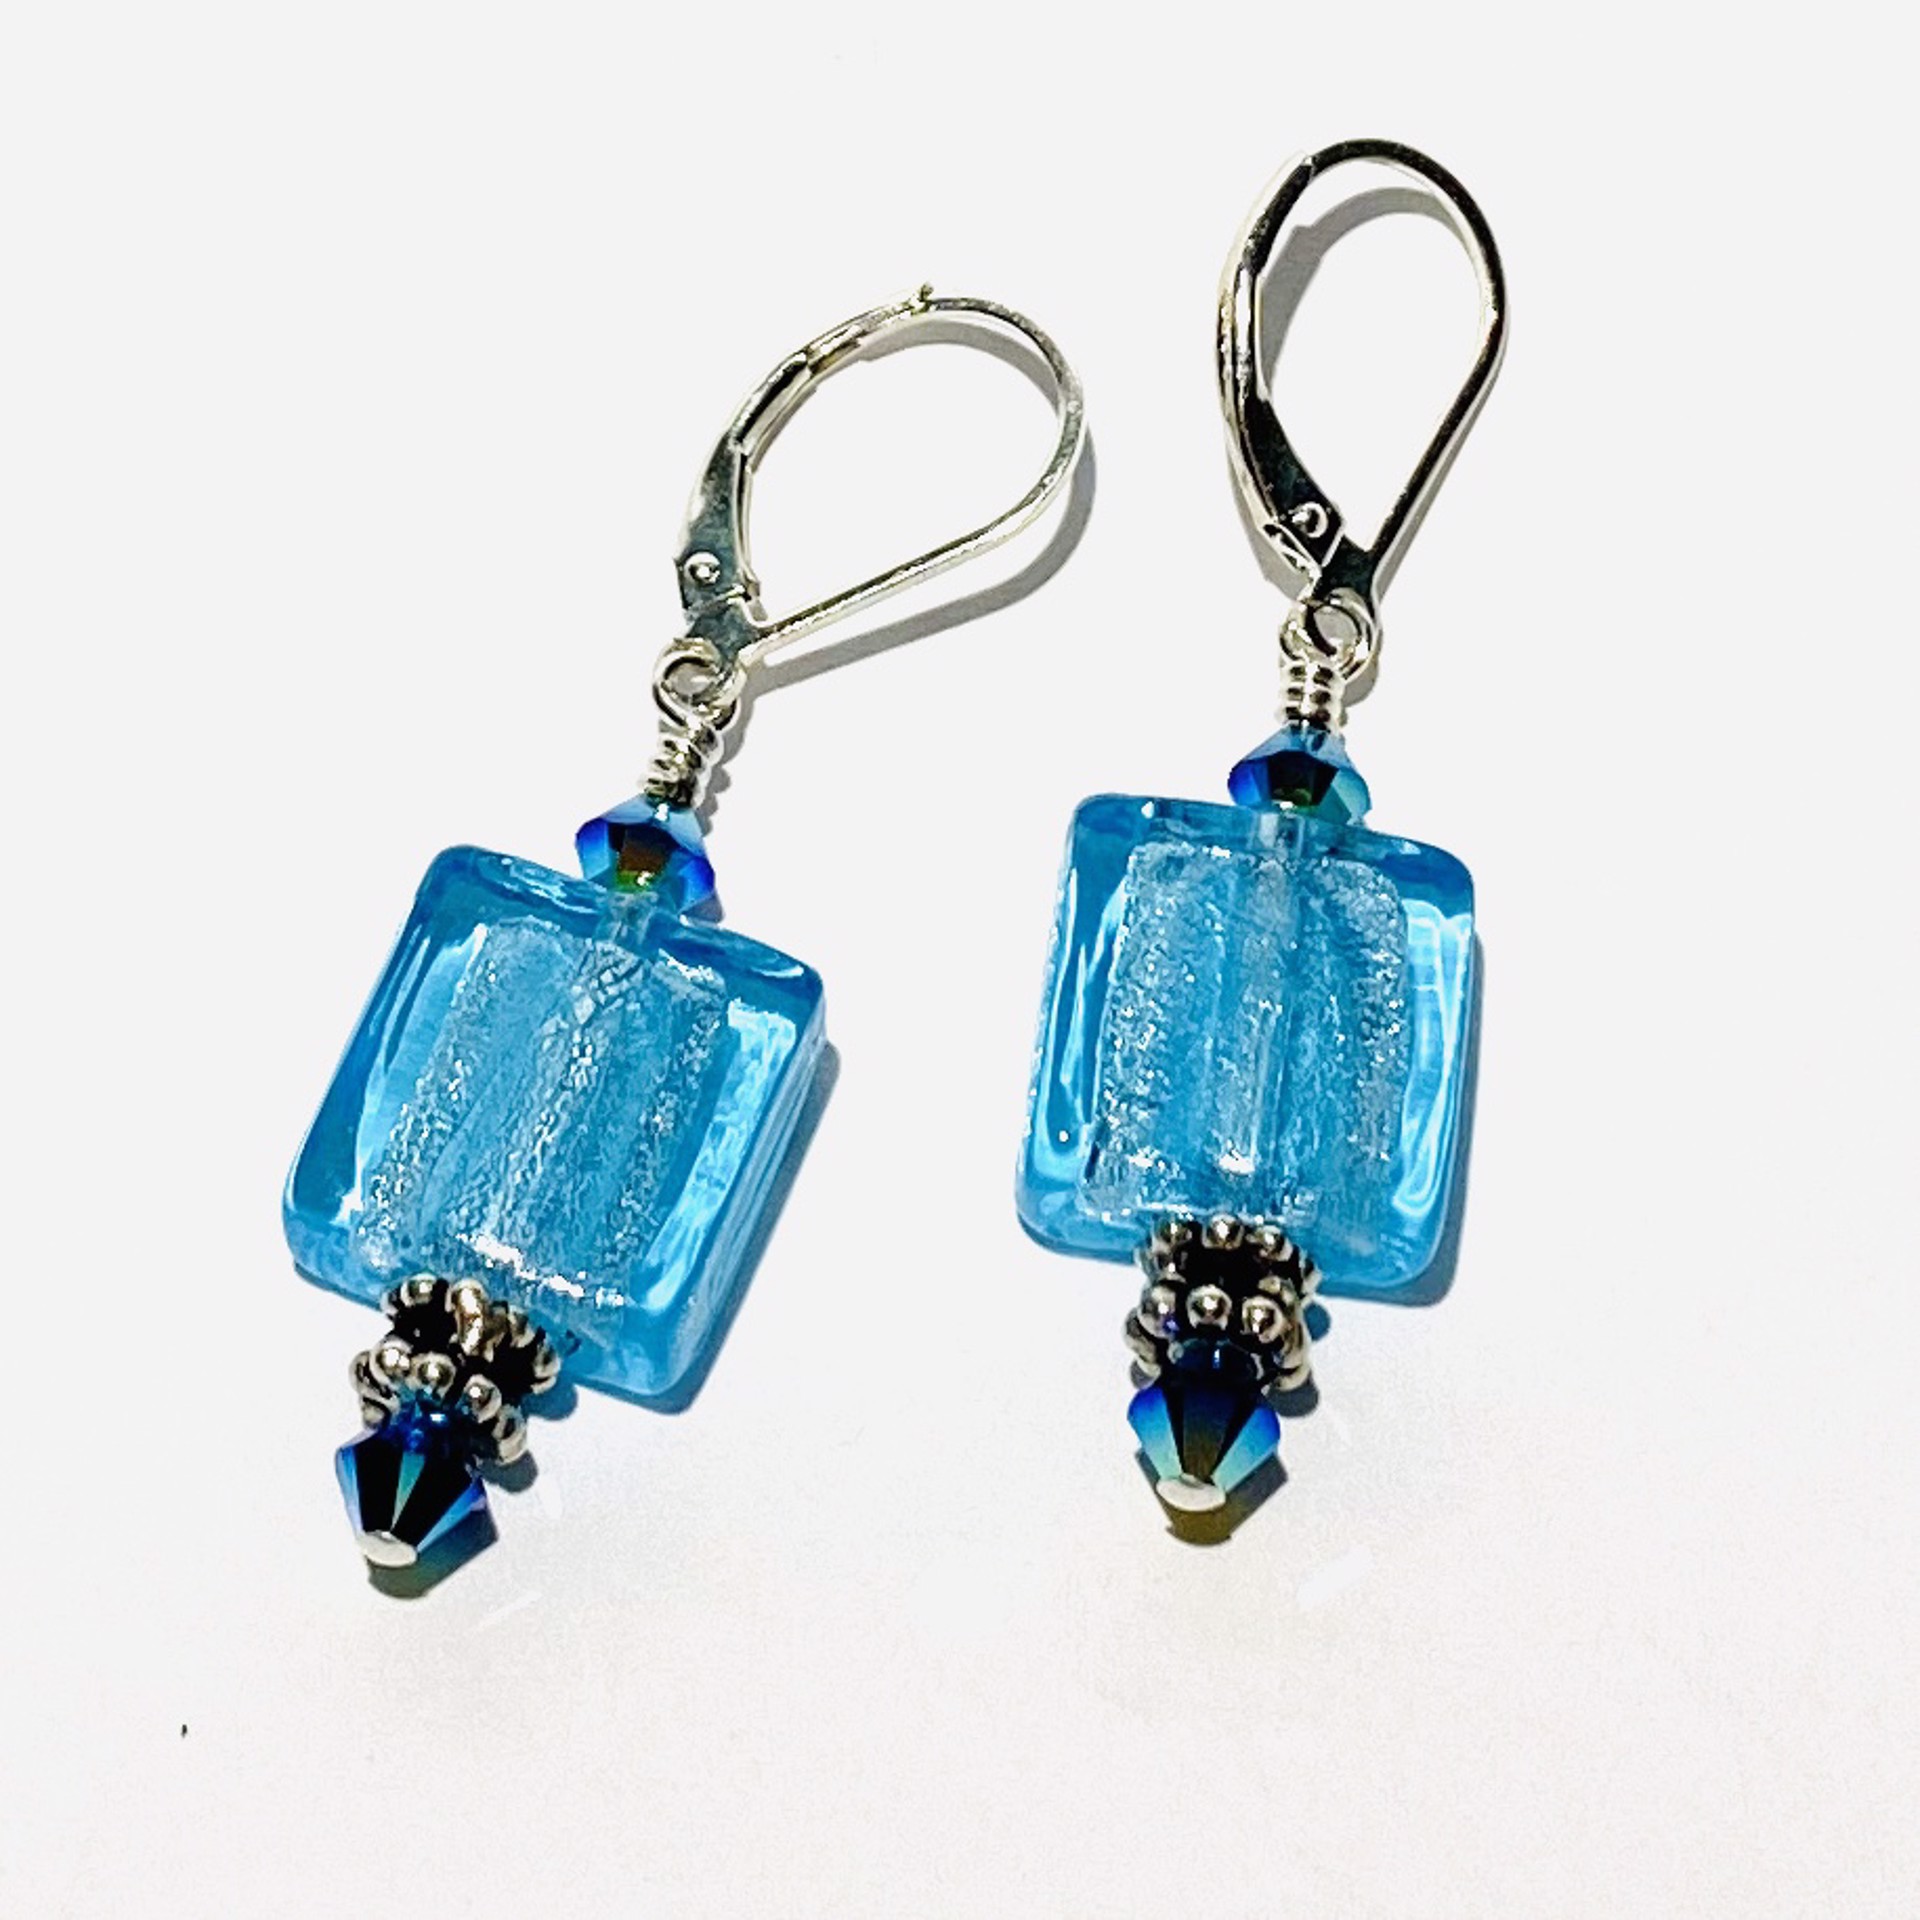 Blue and Silver Art Glass Earrings, E86 by Shoshannah Weinisch